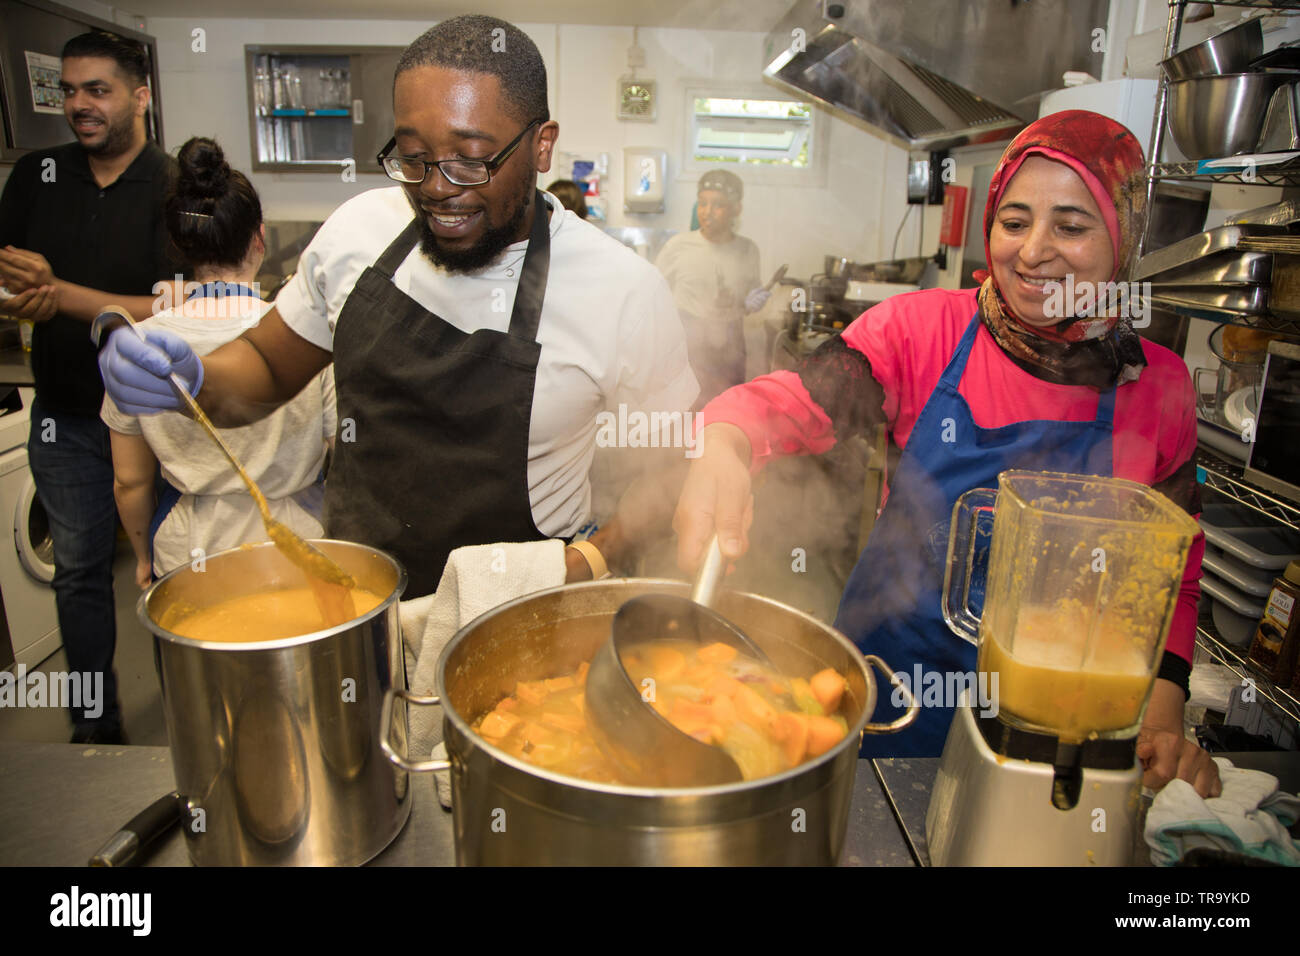 Bénévoles à une cuisine communautaire préparer un repas pour les diners dans le besoin. Banque D'Images